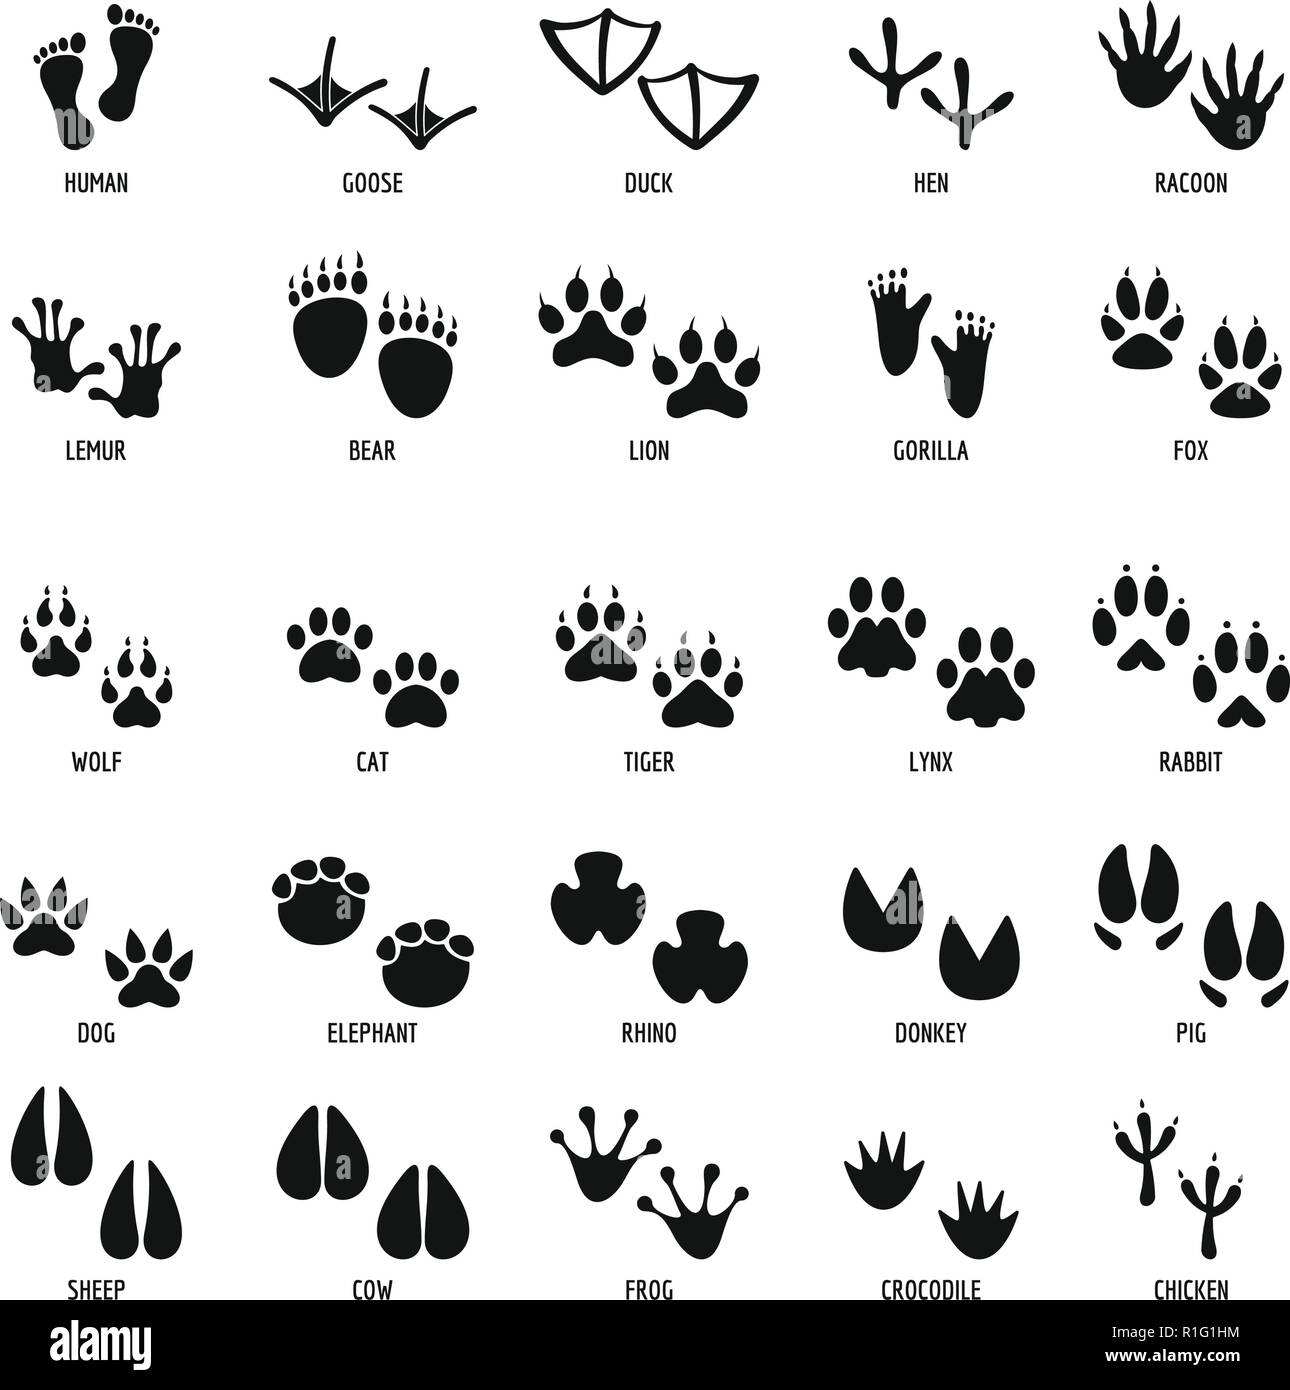 L'empreinte d'animaux icons set. Illustration simple de 25 empreinte animale vector icons for web Illustration de Vecteur